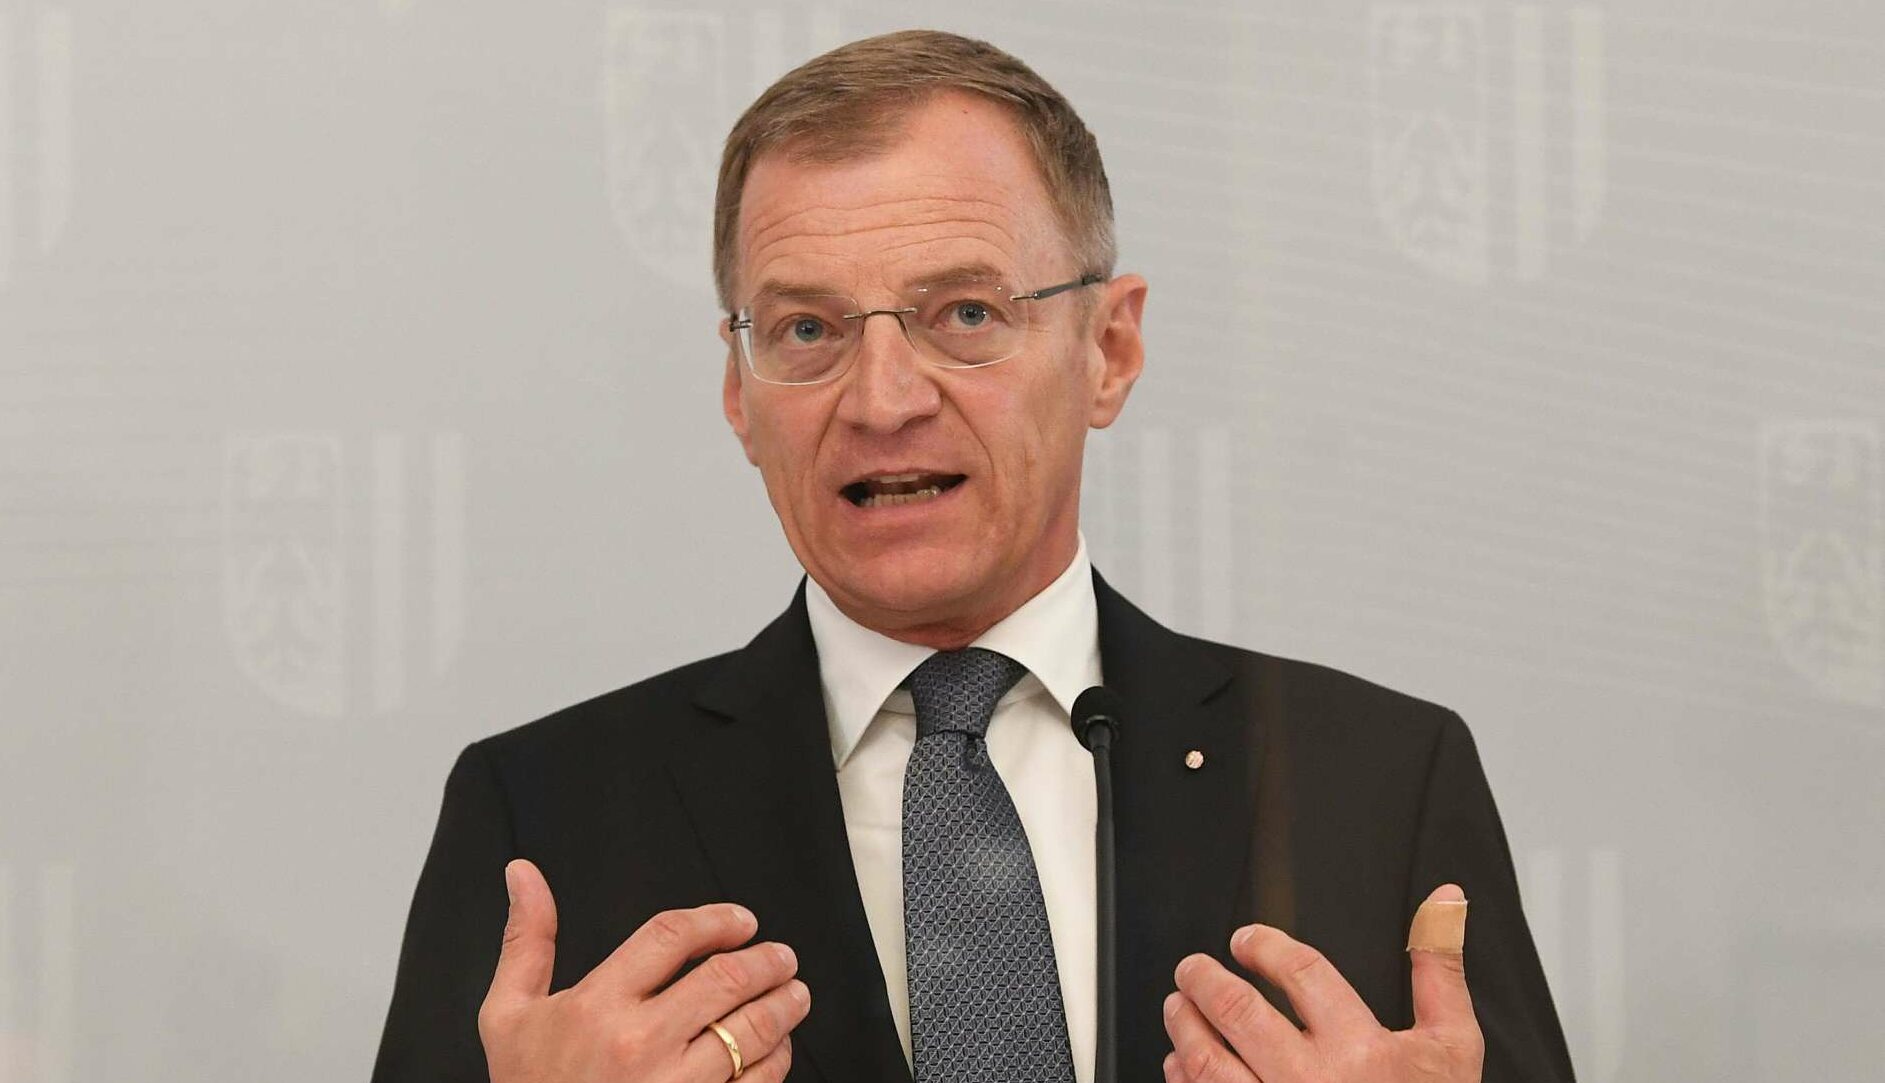 Landeshauptmann Thomas Stelzer sieht in der geplanten TU Oberösterreich enormes Potenzial.